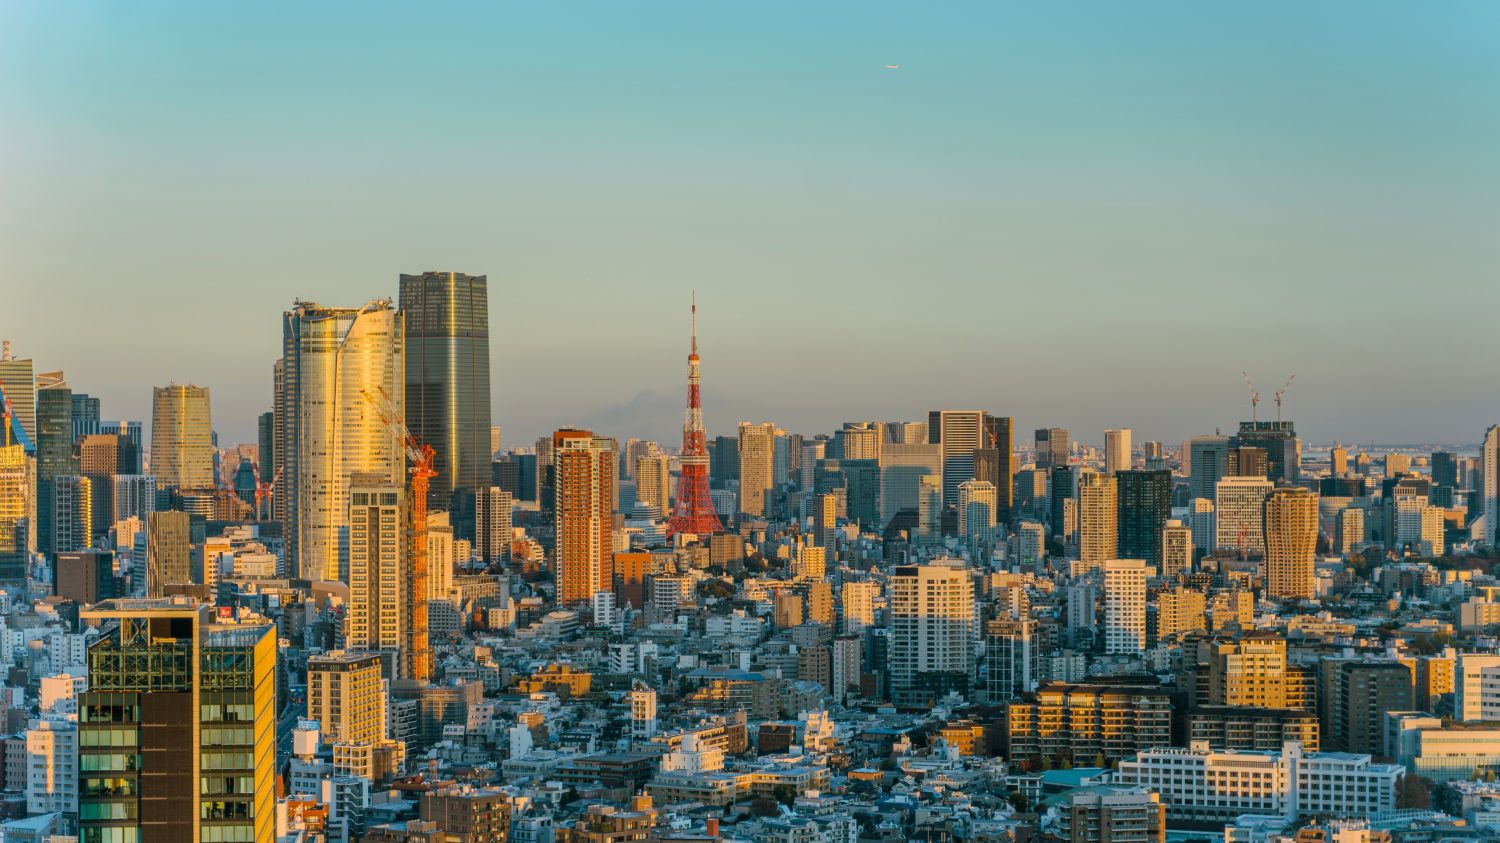 La città di Minato con le colline Azabudai, viste da sud-ovest, dall'edificio del torrente Shibuya.